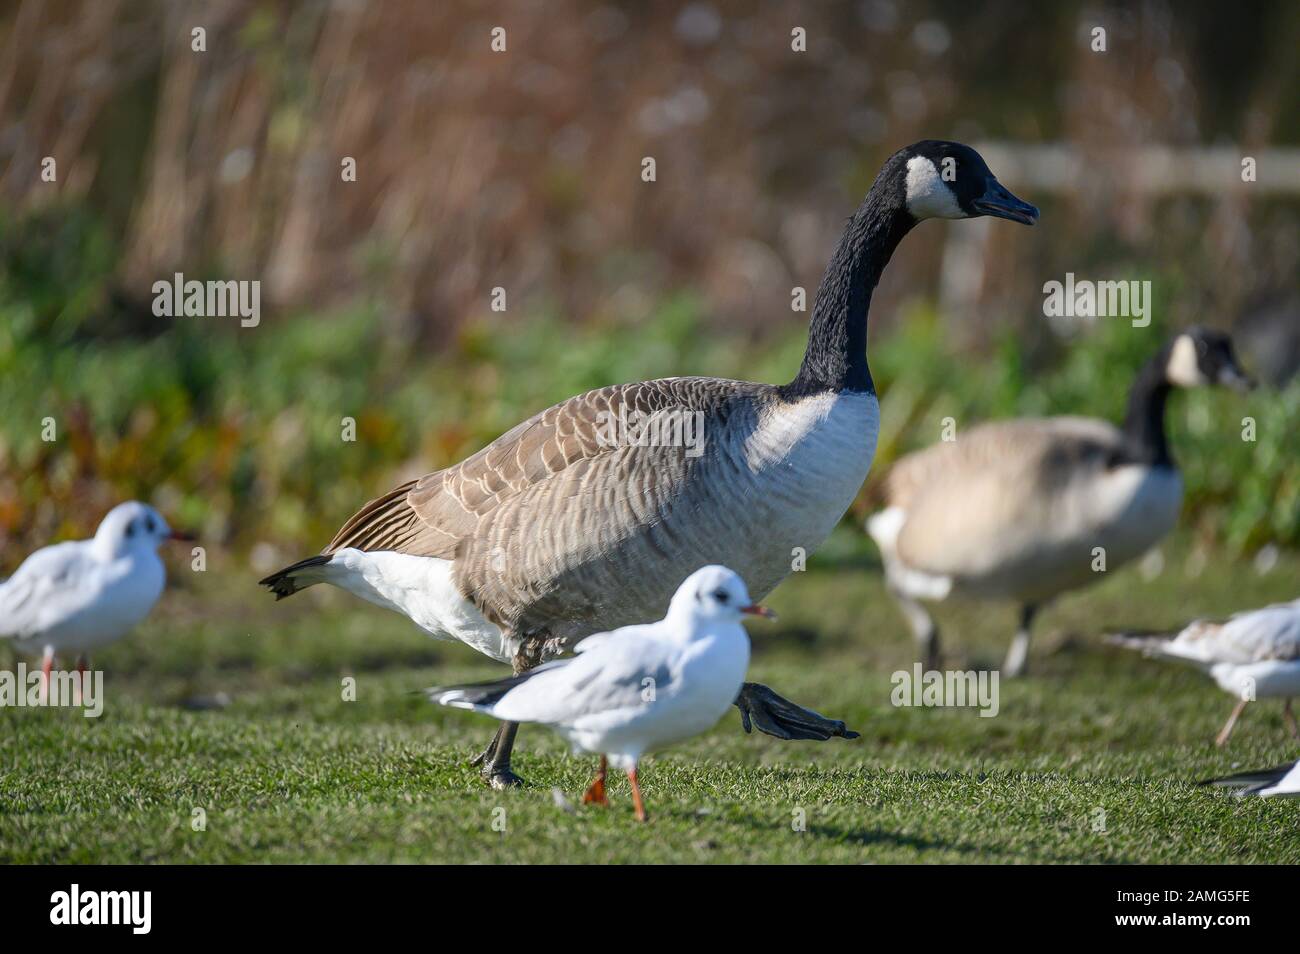 Canada Goose, Ashington, Northumberland, UK Stock Photo